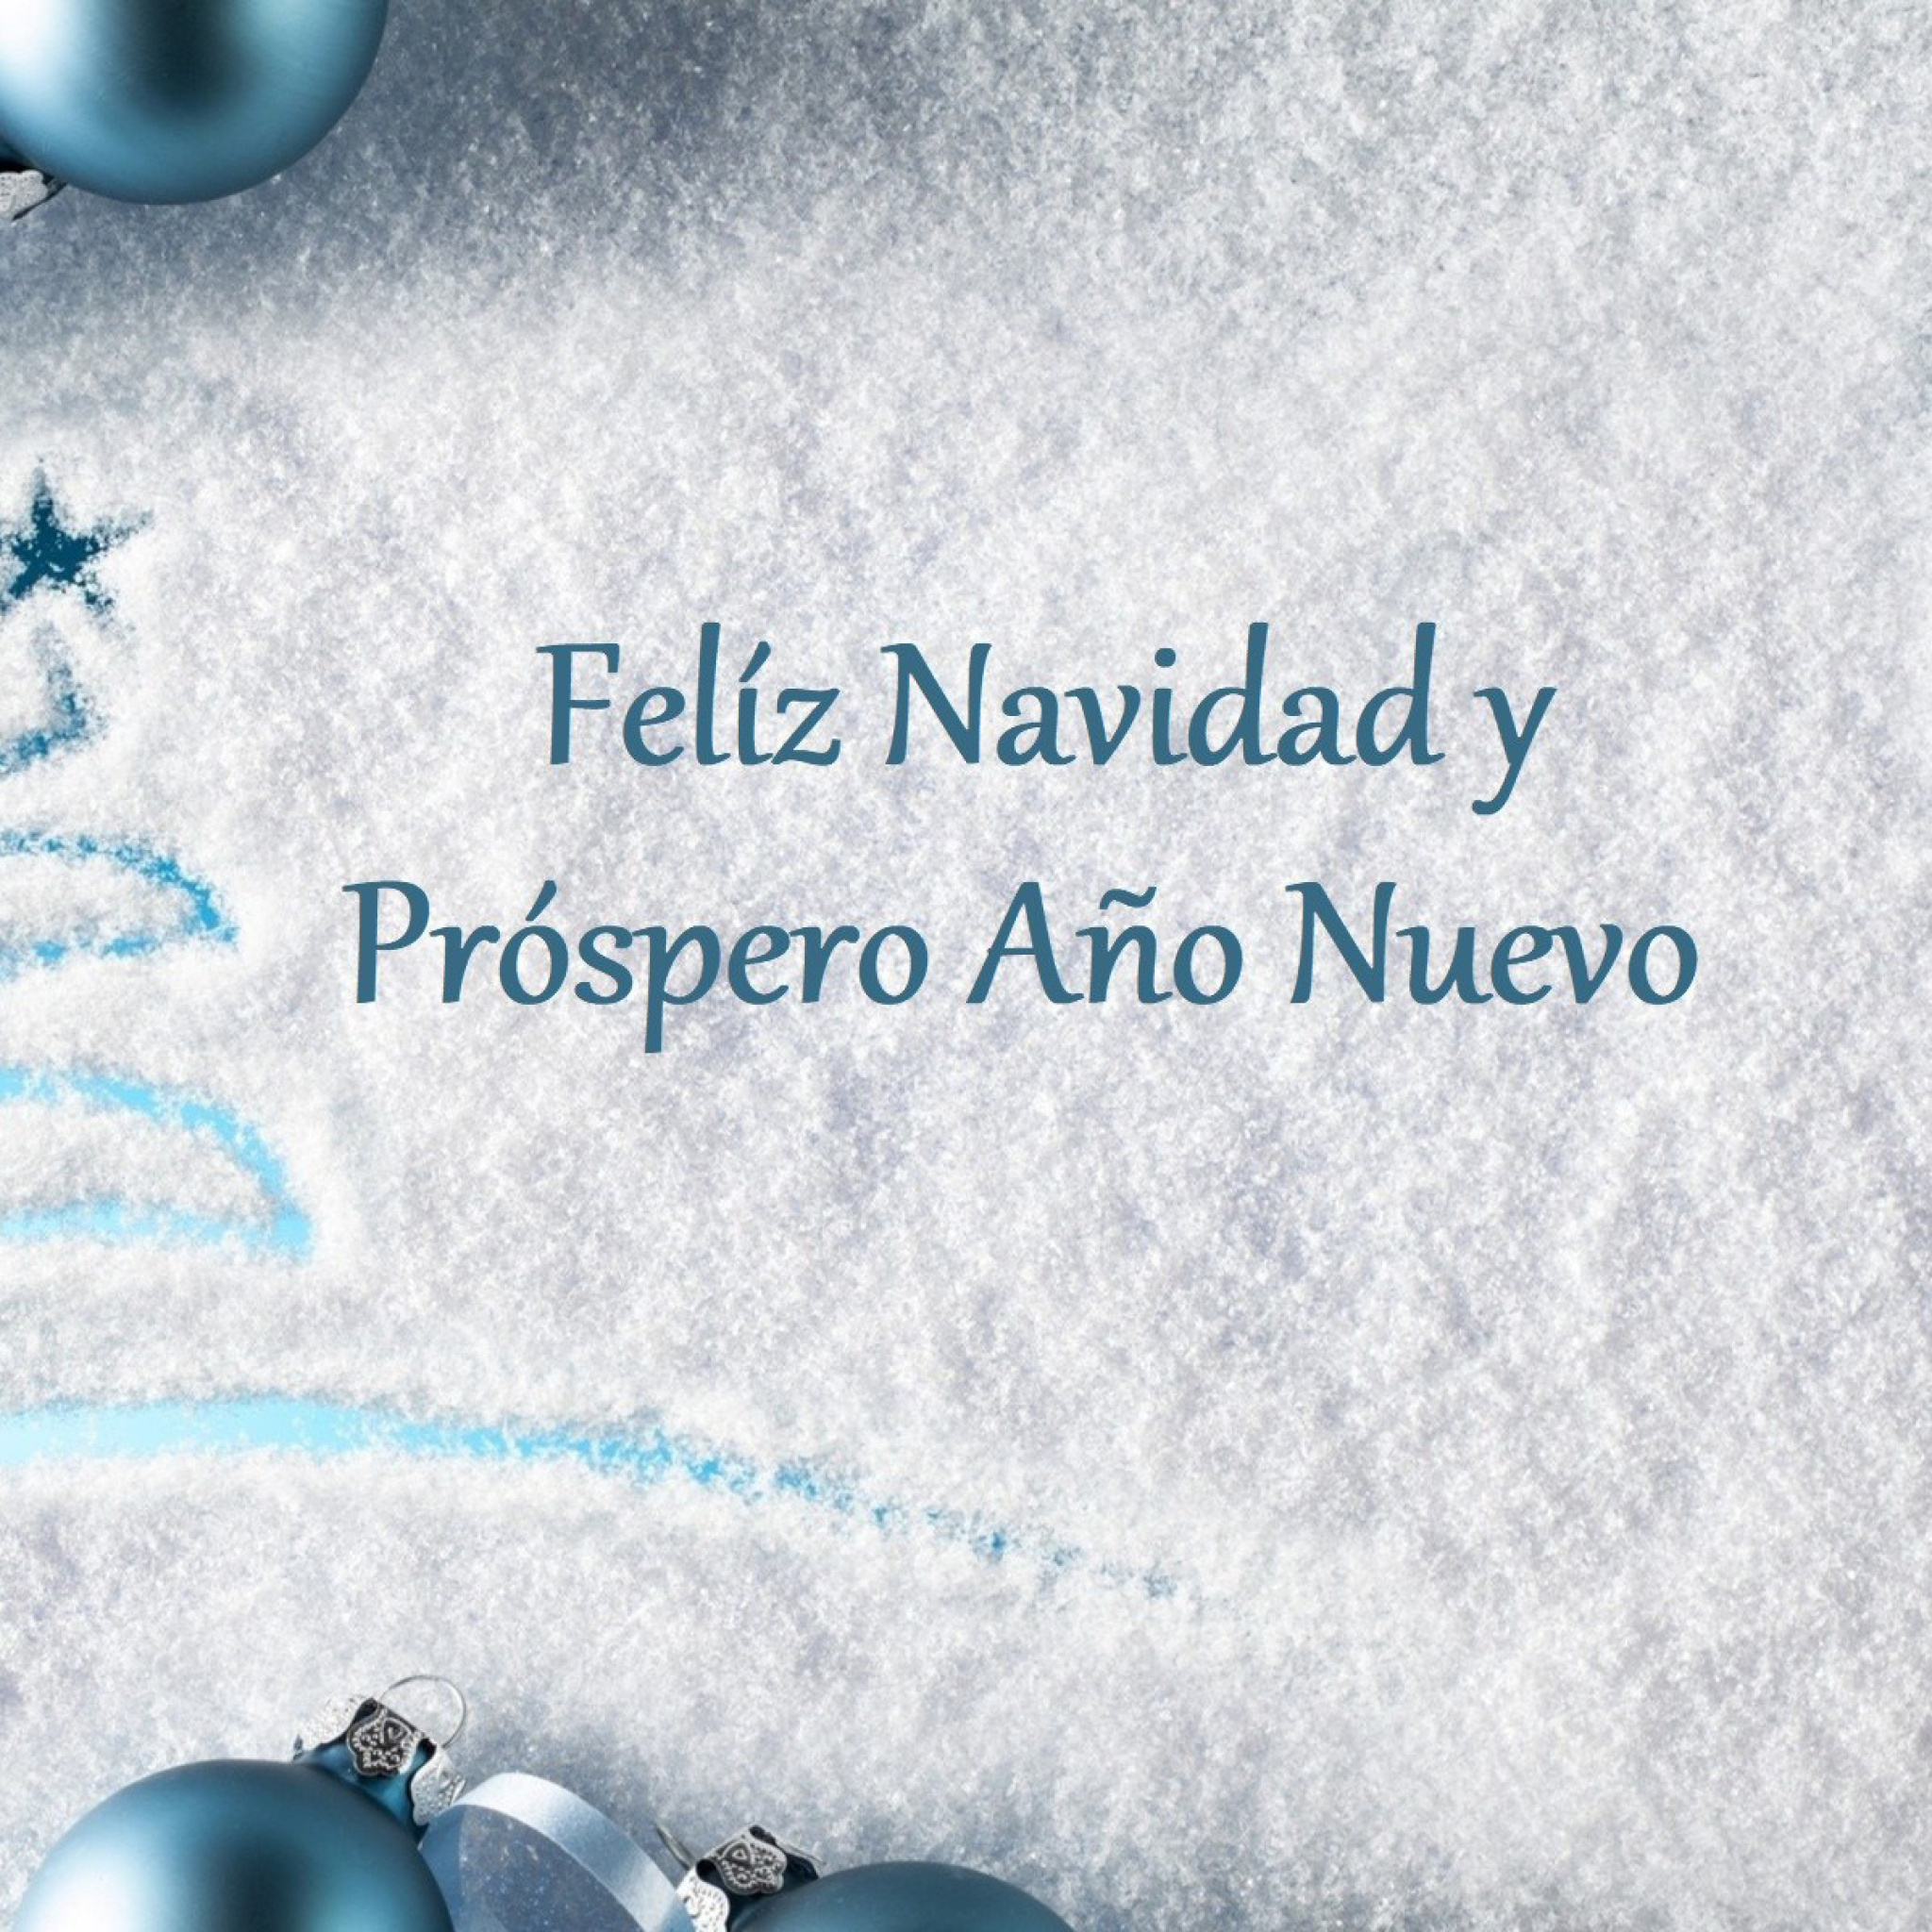 Feliz Navidad y Prospero Ano Nuevo wallpaper 2048x2048